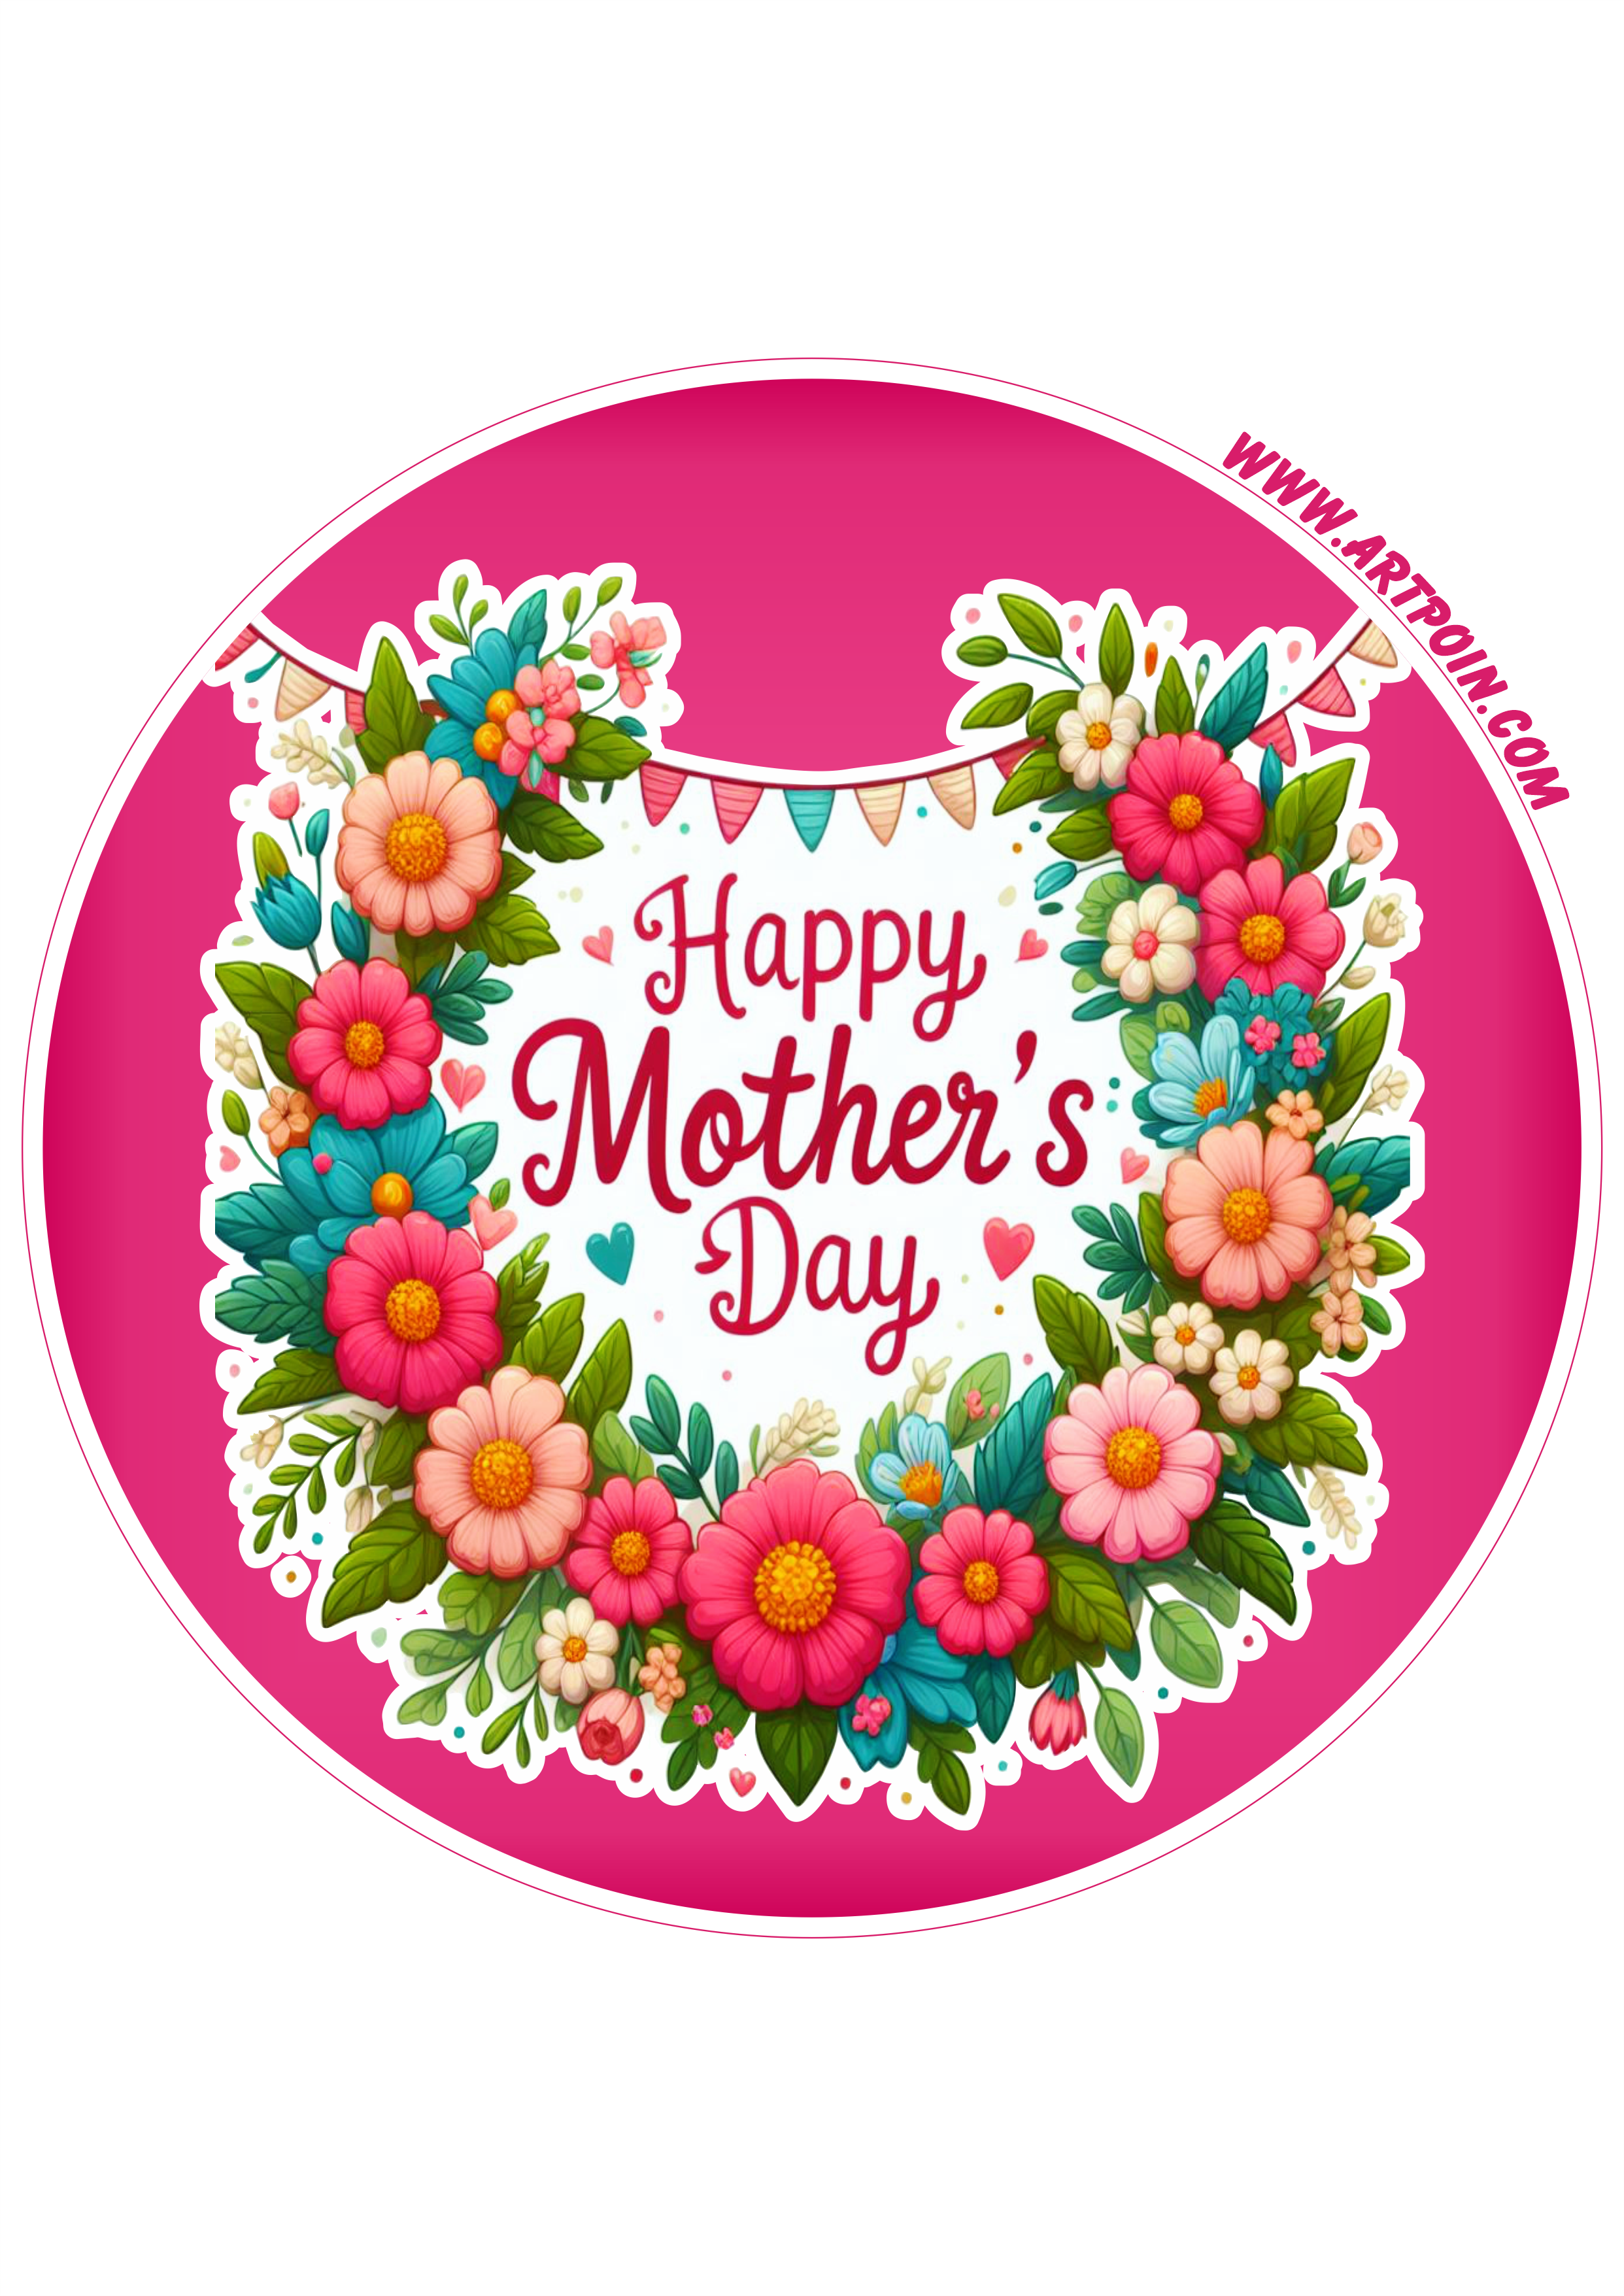 Happy mother’s day adesivo para decoração png